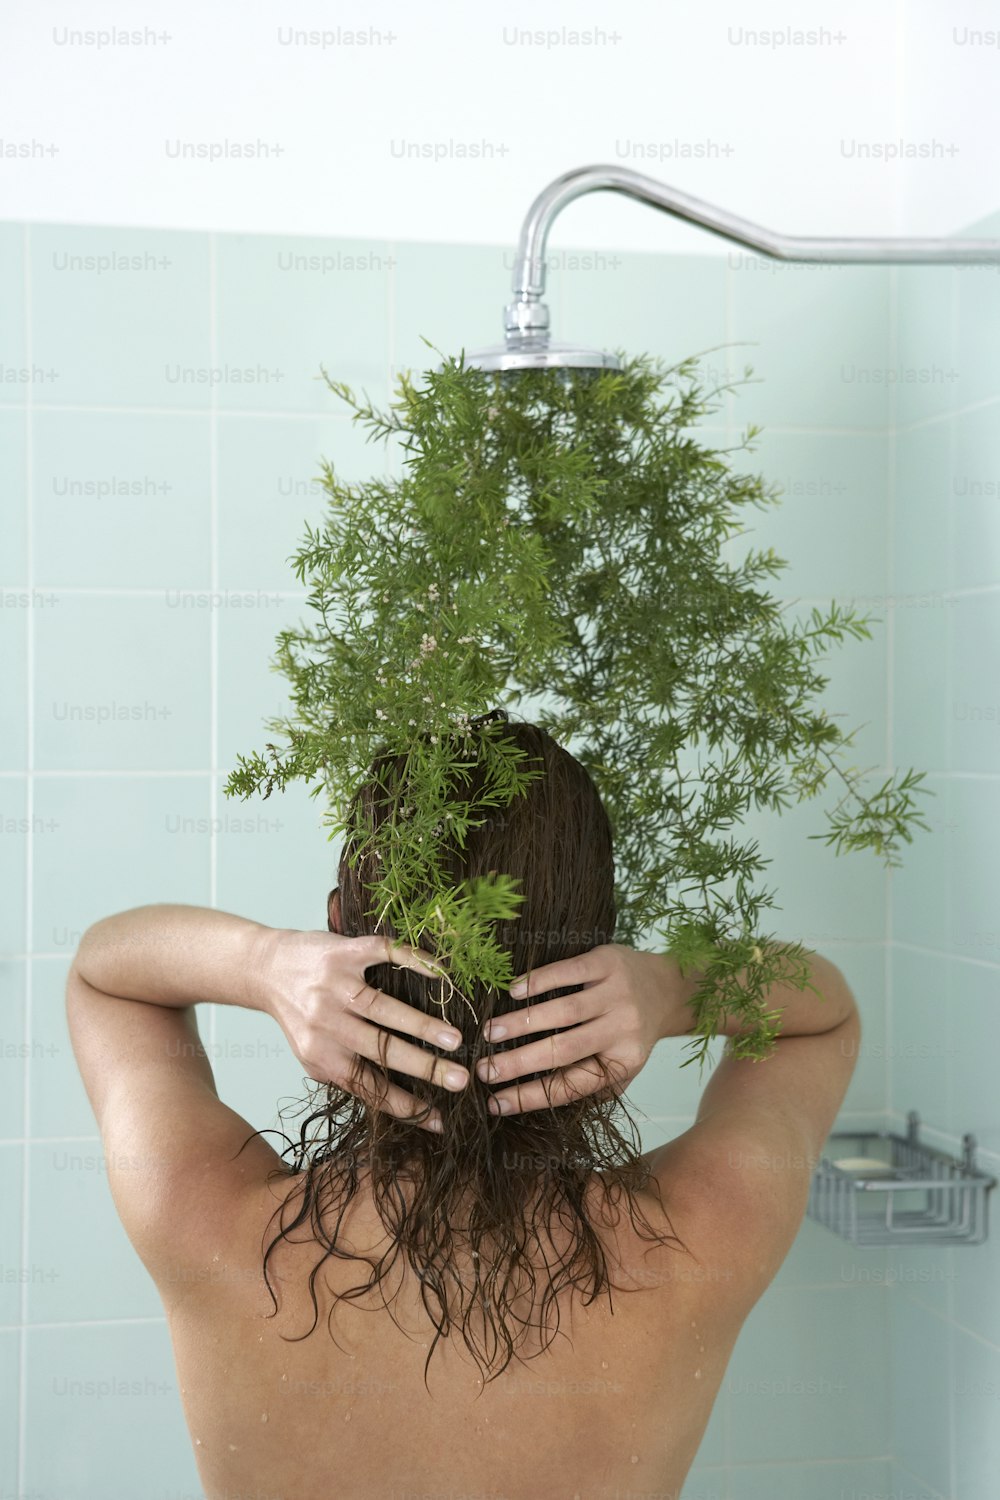 욕조에 있는 여자가 머리 위로 식물을 들고 있다